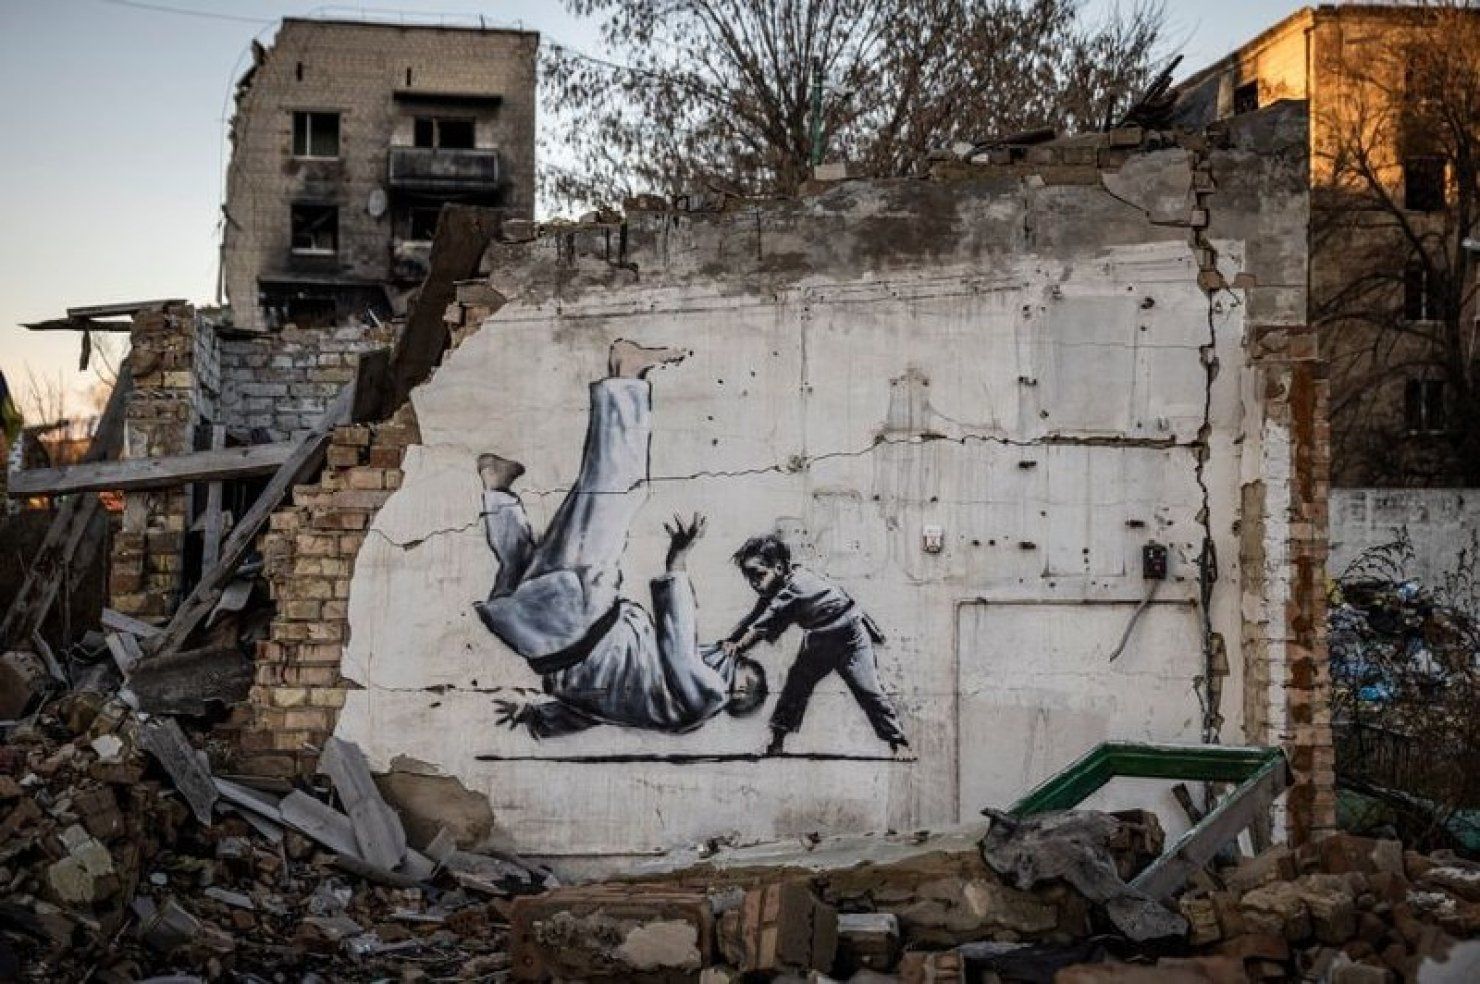 Під час візиту в Україну Бенксі проникся жахіттями, скоєними російською армією, і виклав свої почуття на графіті